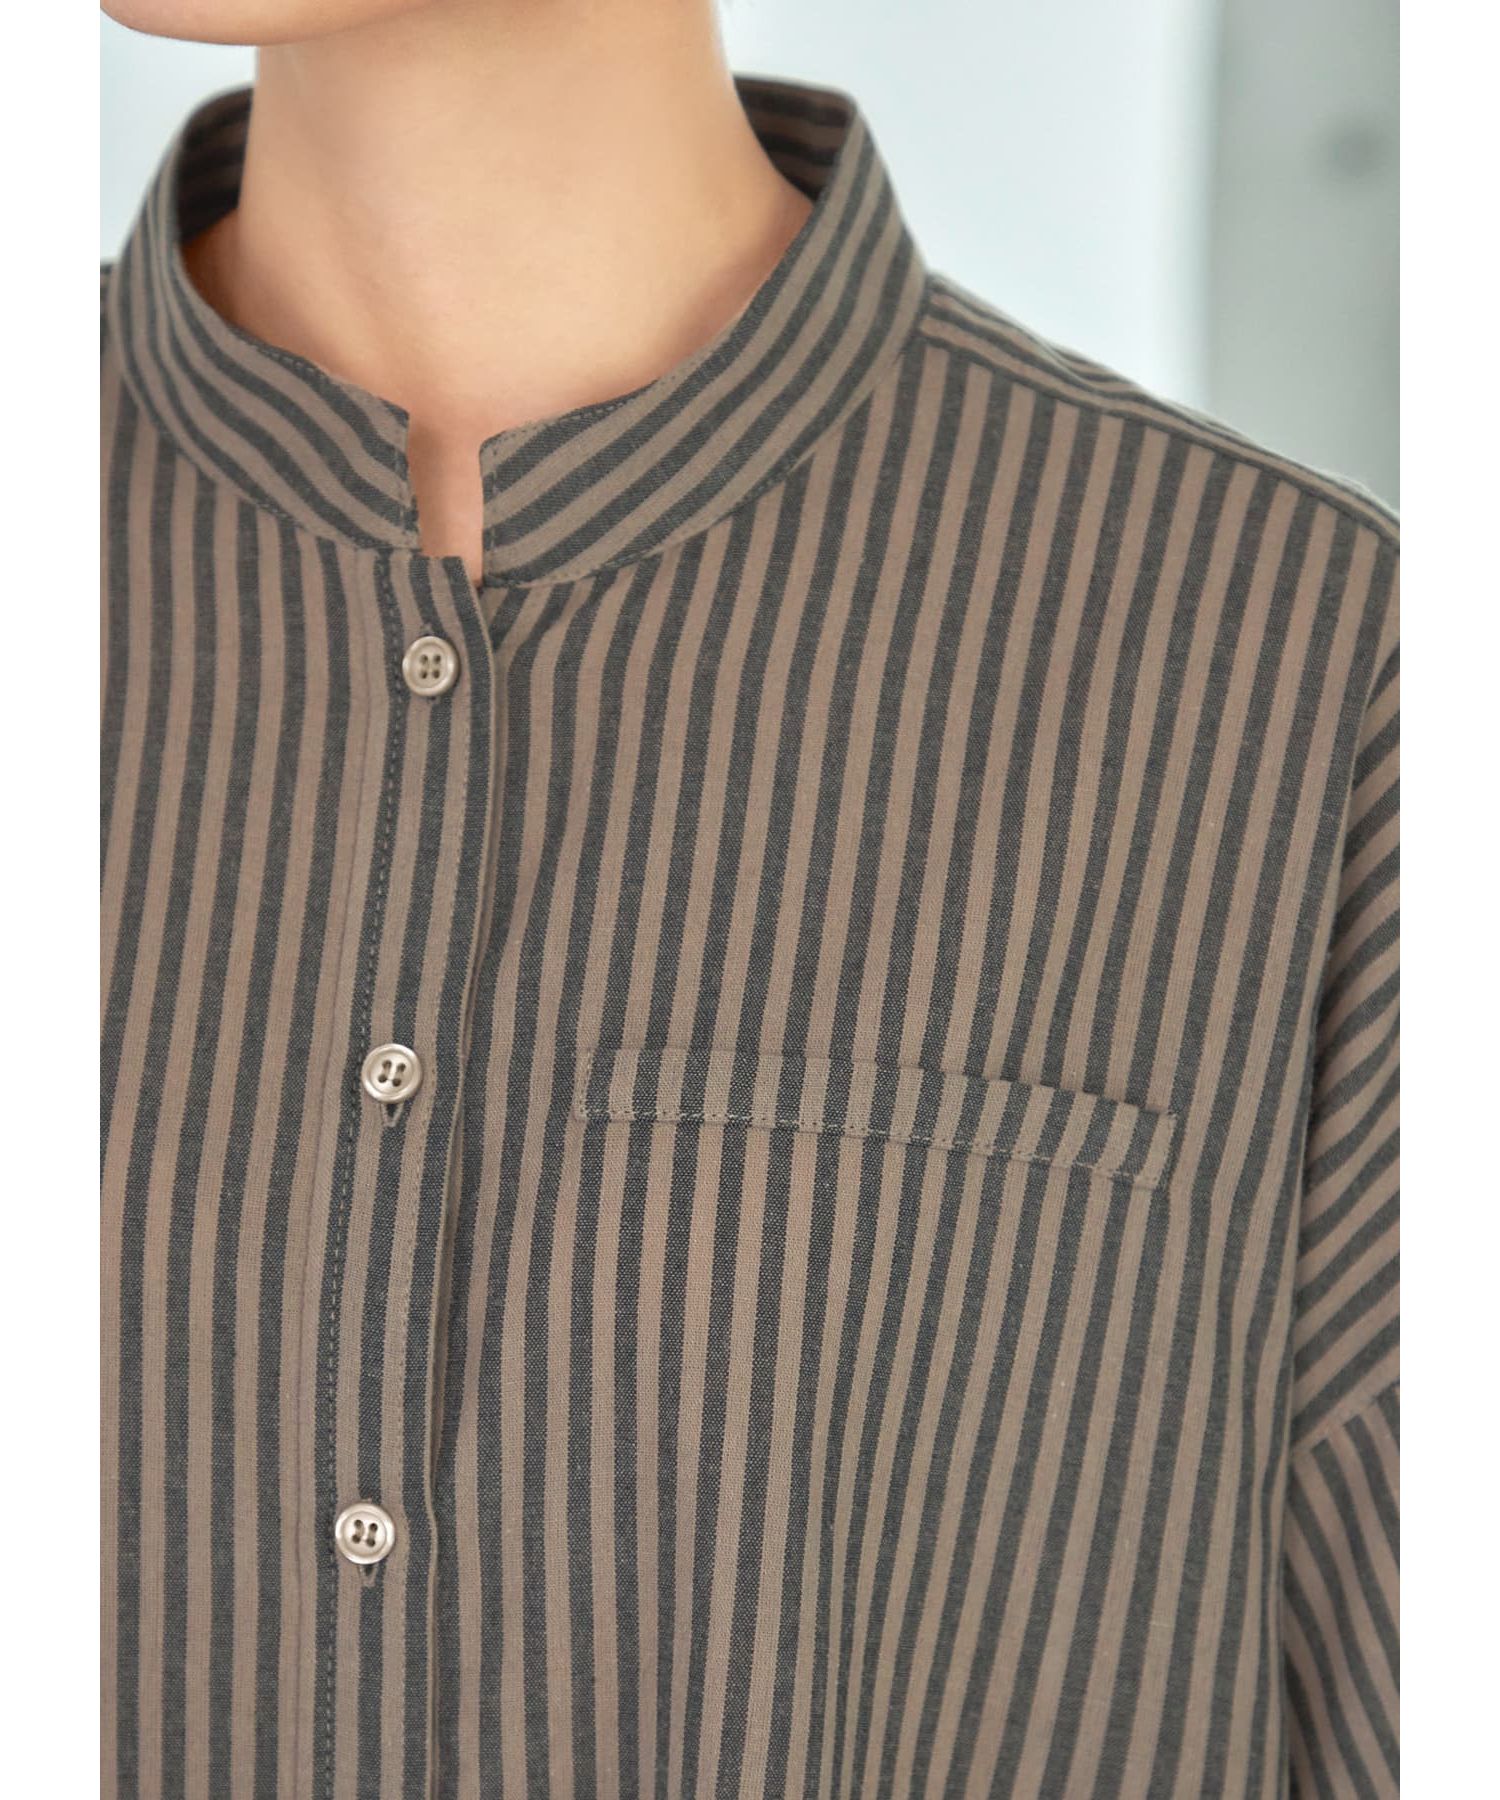 カラーナチュラルストライプ織りシャツ|STYLE DELI(スタイルデリ)の